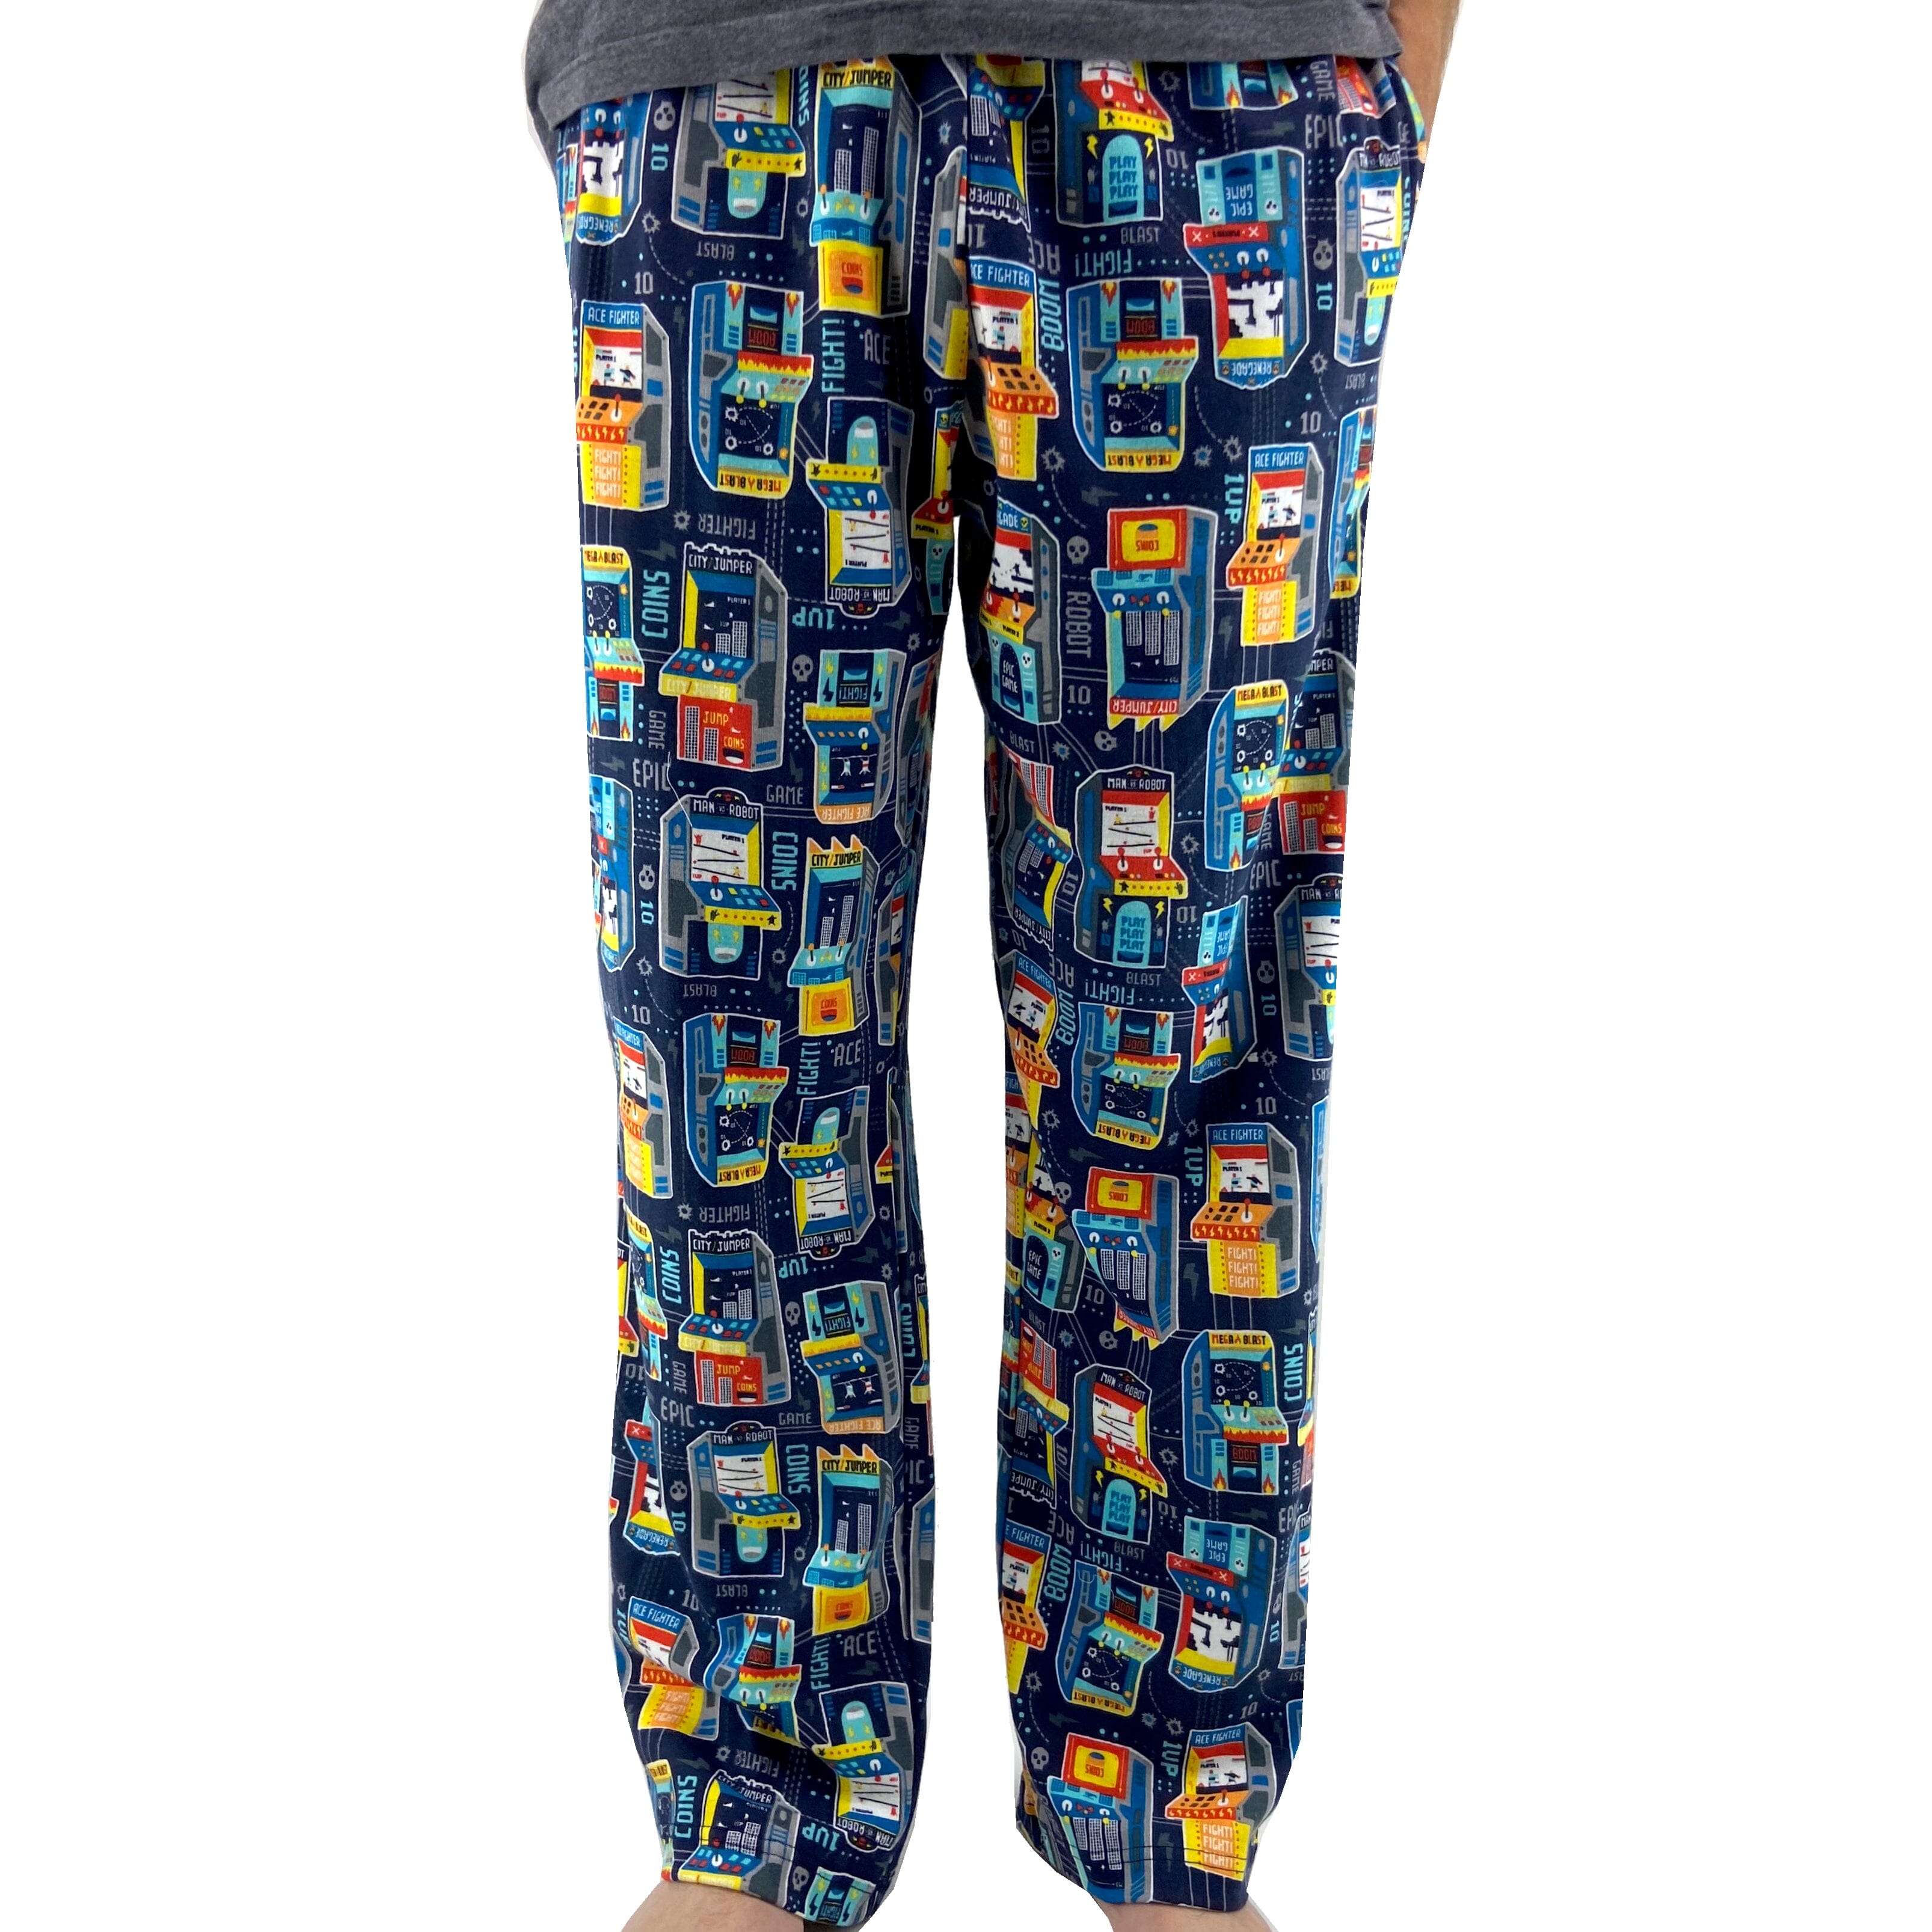 Ekouaer Boys Pajama Pants 3 Pack Sleep Pants Soft Elastic Waist Kids Pajama  Bottoms Plaid Lounge Pants with 2 Pockets